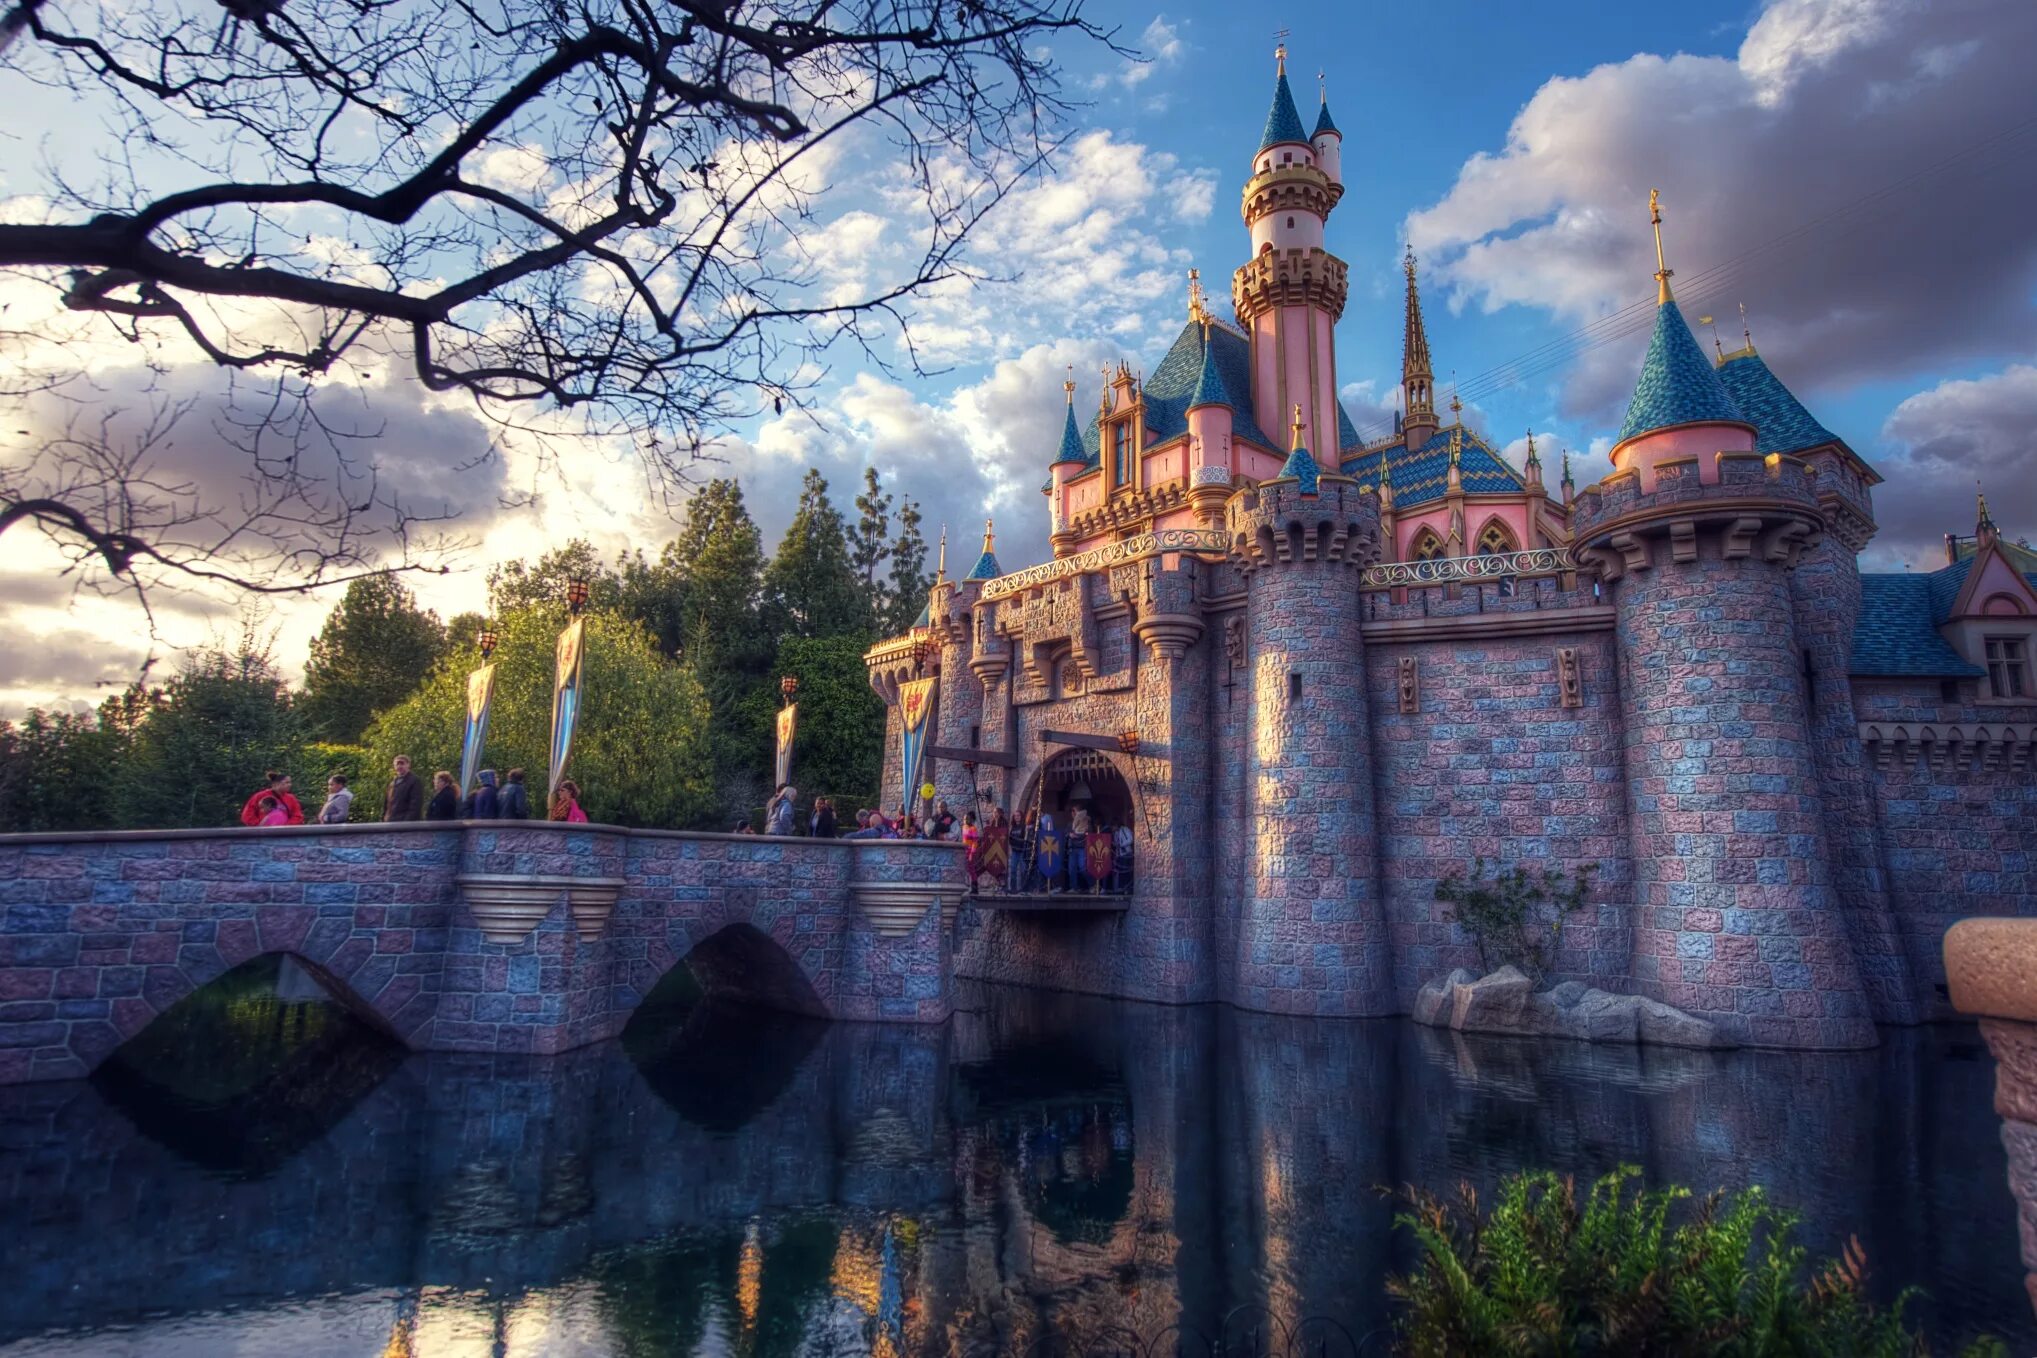 Диснейленд Анахайм замок спящей красавицы. Walt Disney World дворец. Замок спящей красавицы Уолт Дисней. Дворец сказочной красоты